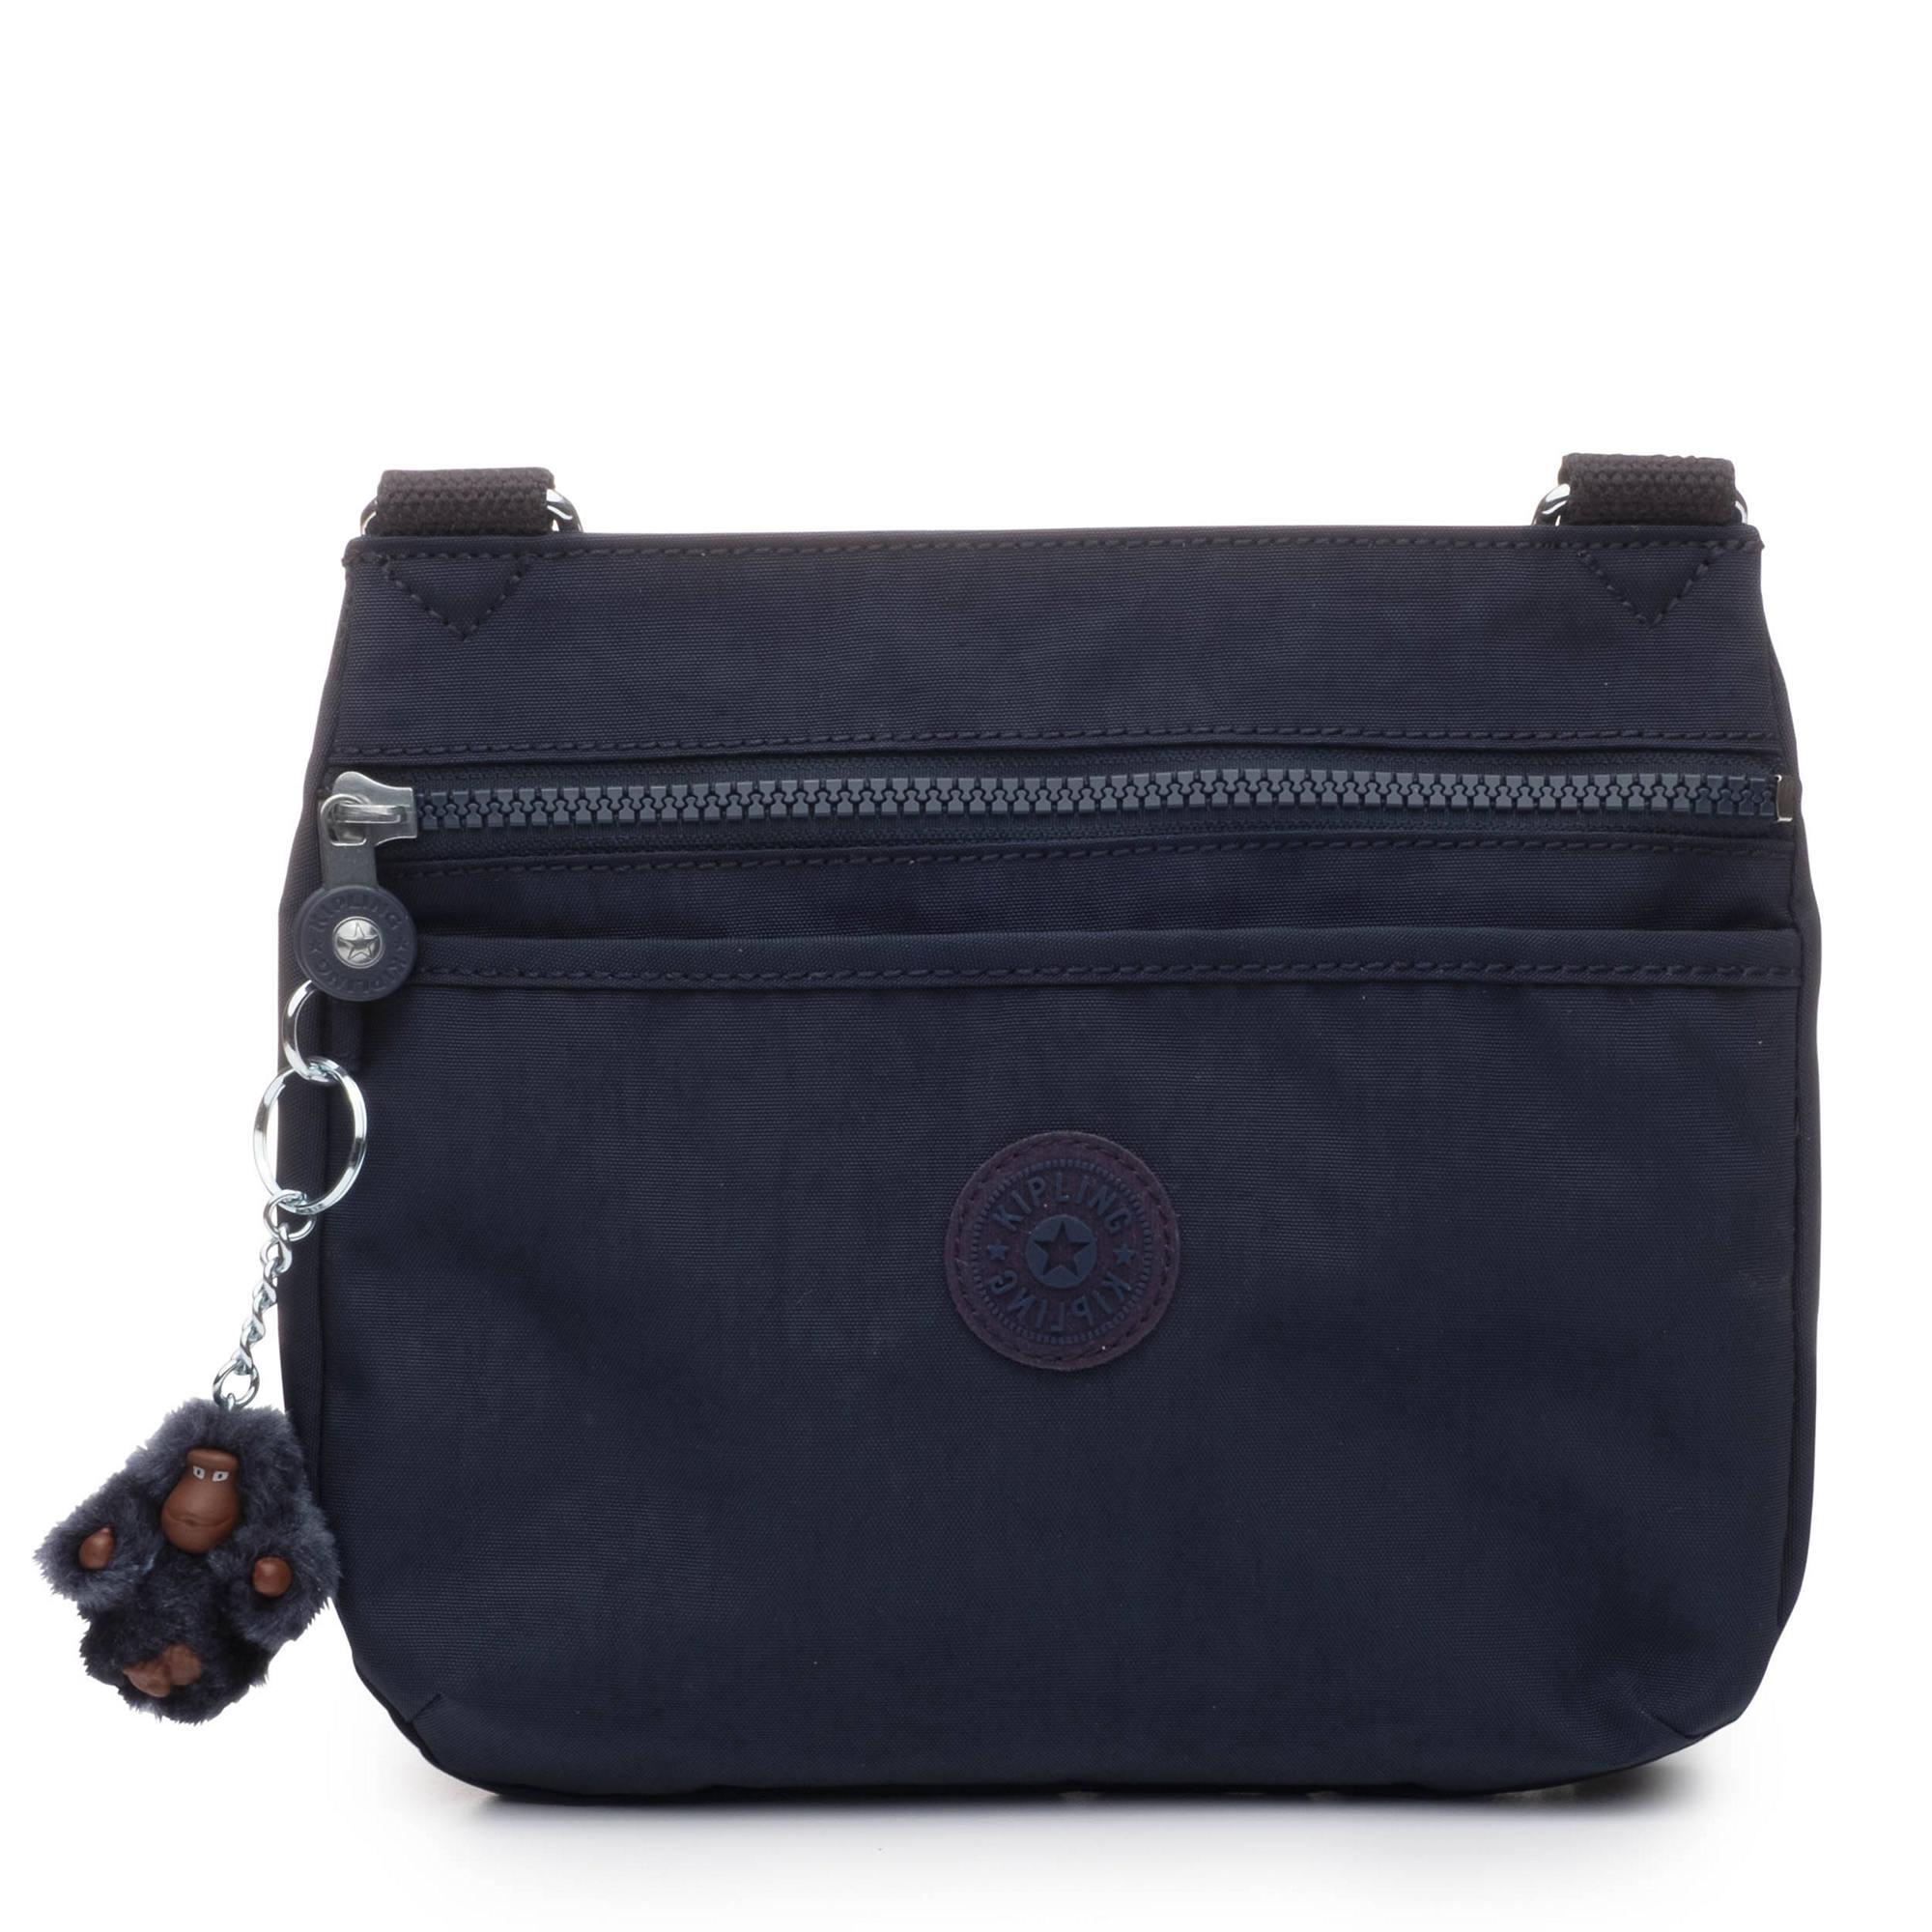 Kipling Emmylou Crossbody Bag | eBay